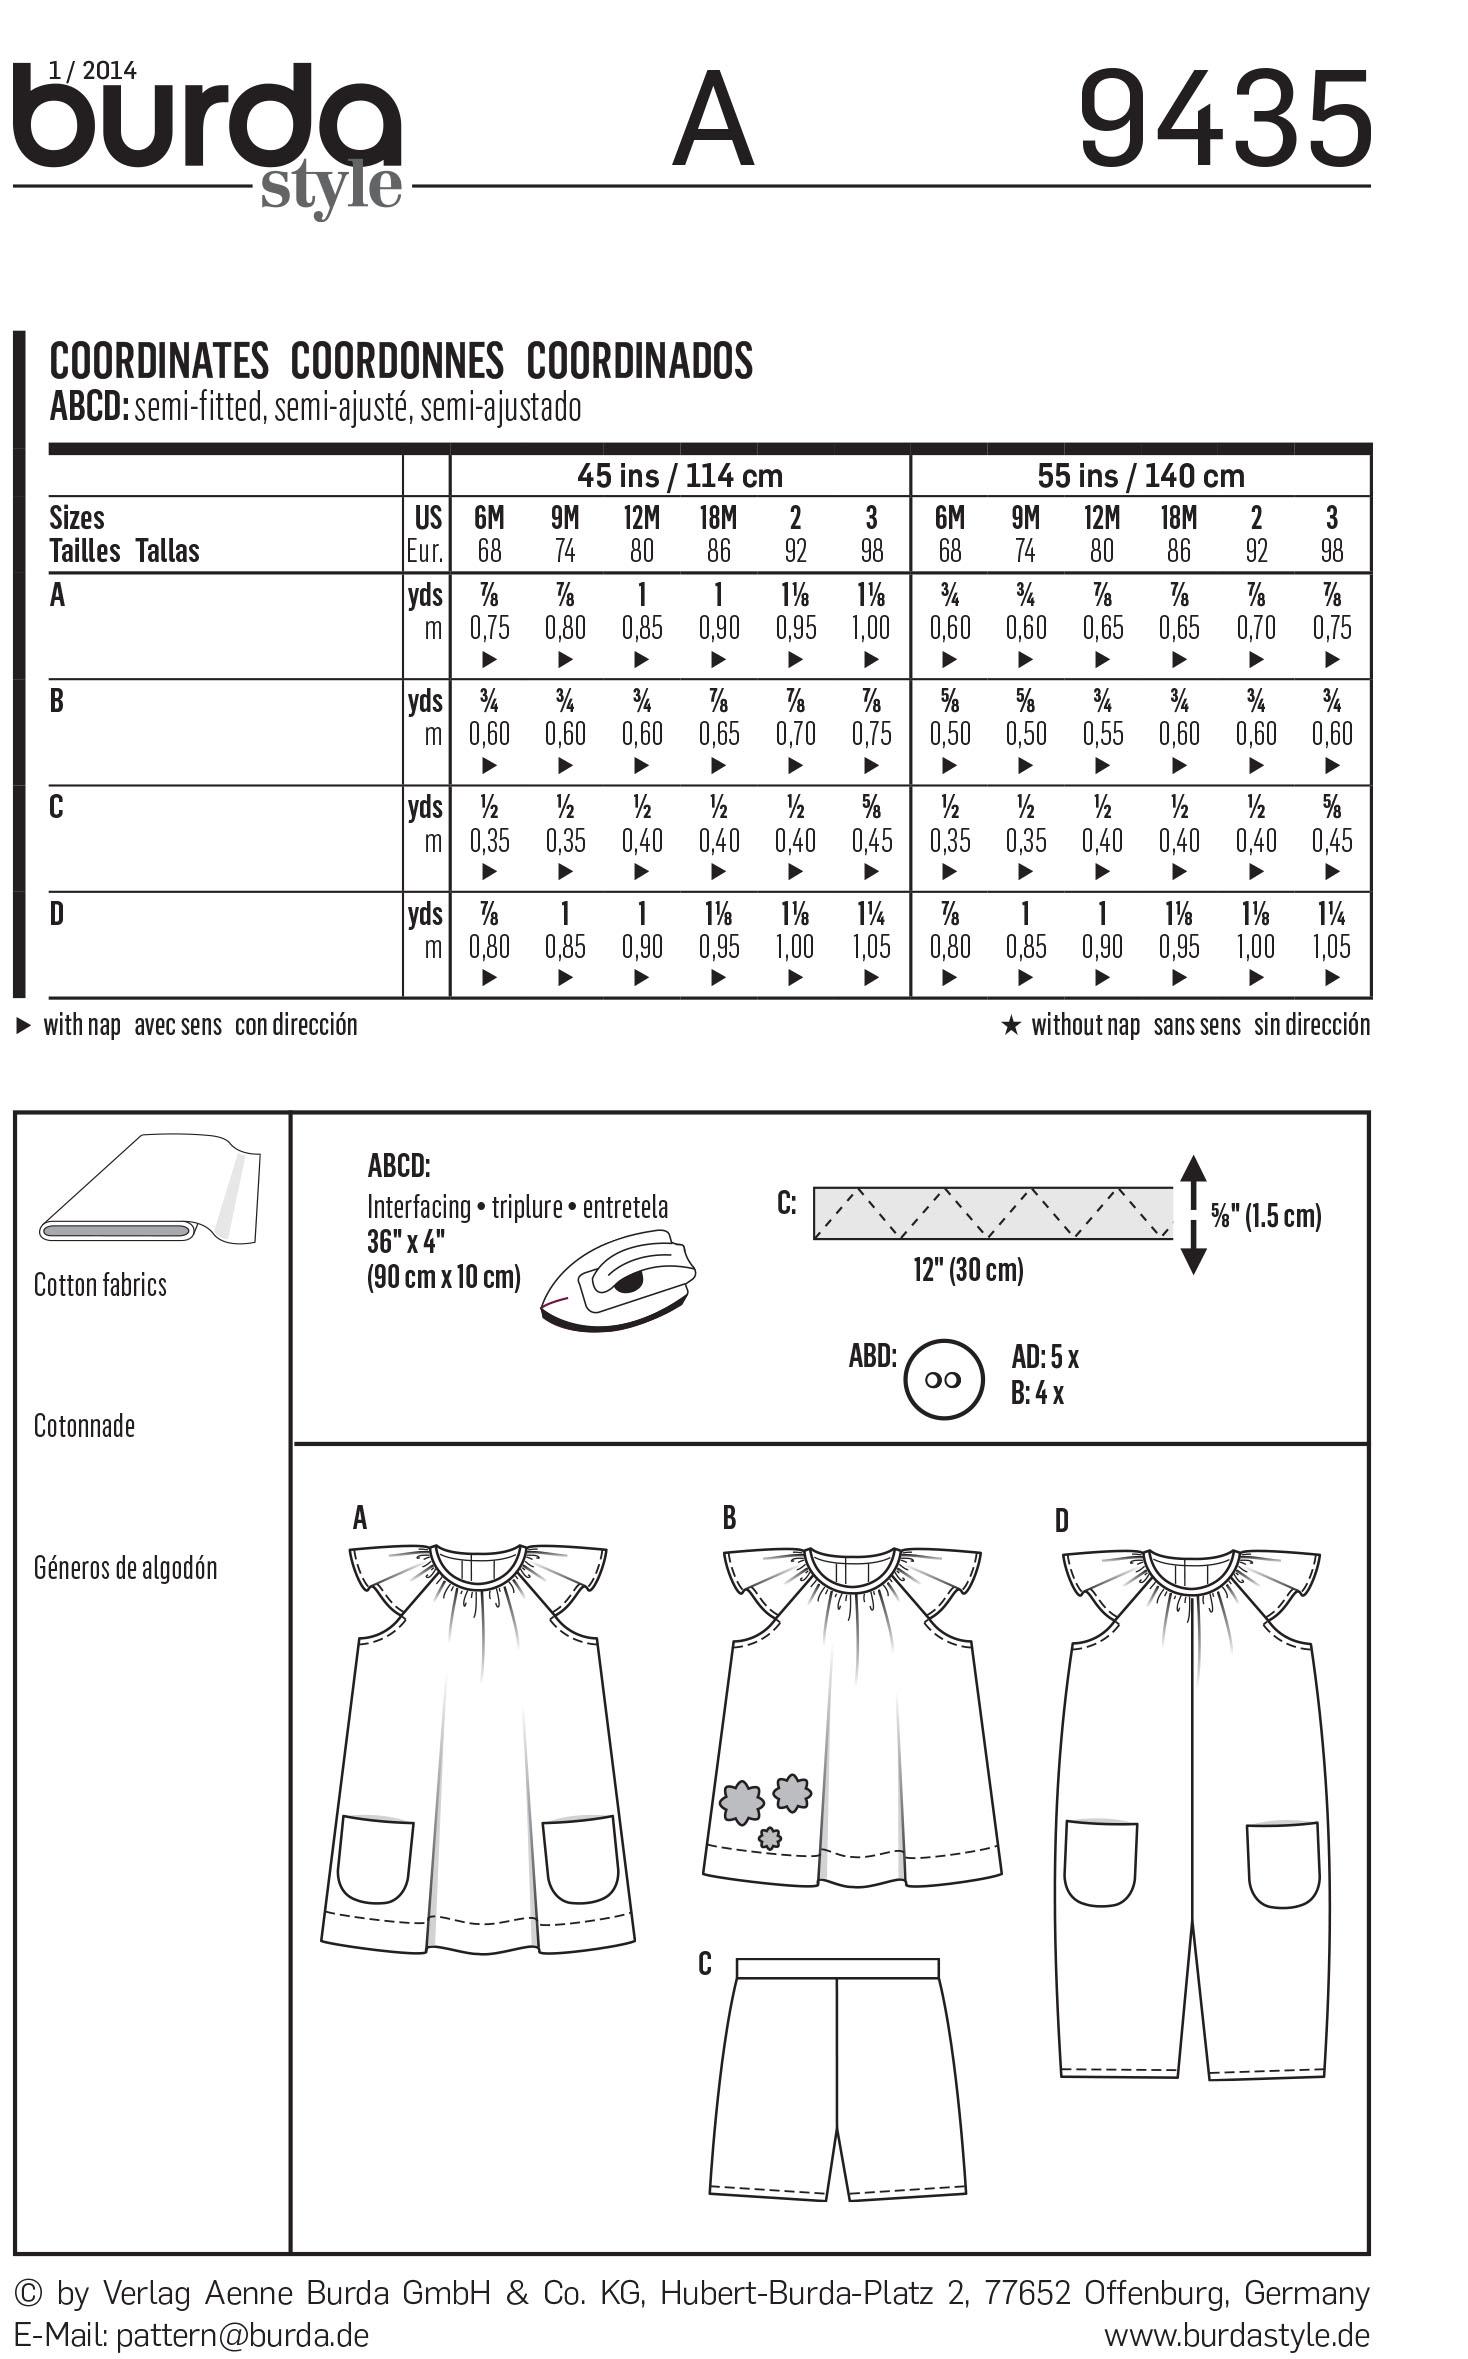 Burda B9435 Burda Baby Sewing Pattern